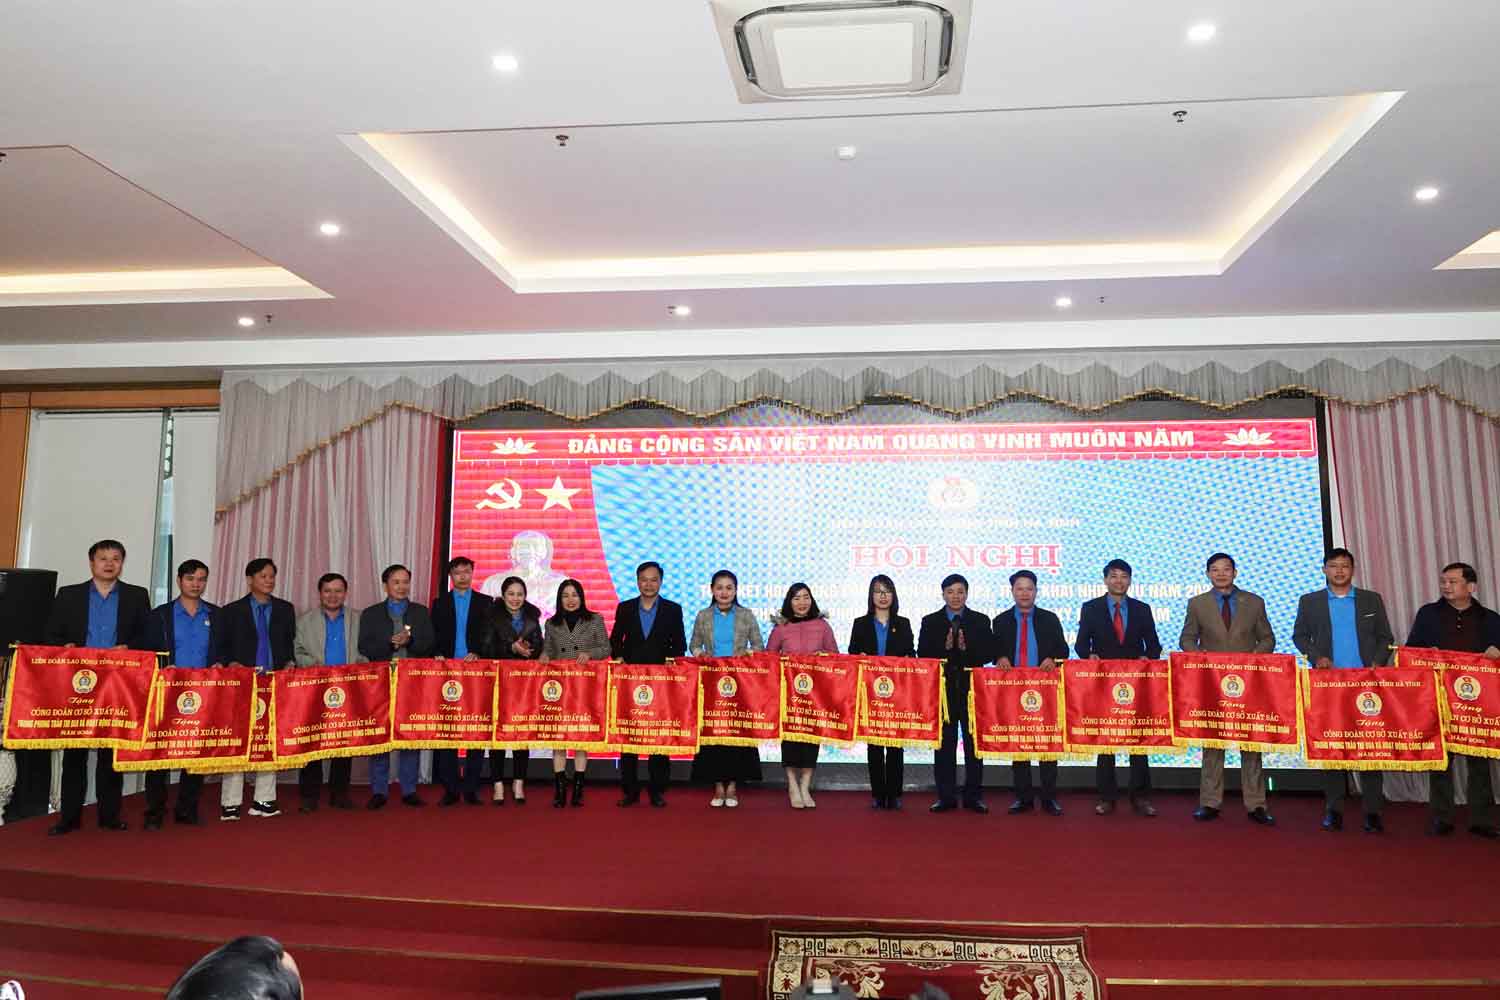 15 tập thể được LĐLĐ tỉnh Hà Tĩnh tặng cờ thi đua. Ảnh: Trần Tuấn.